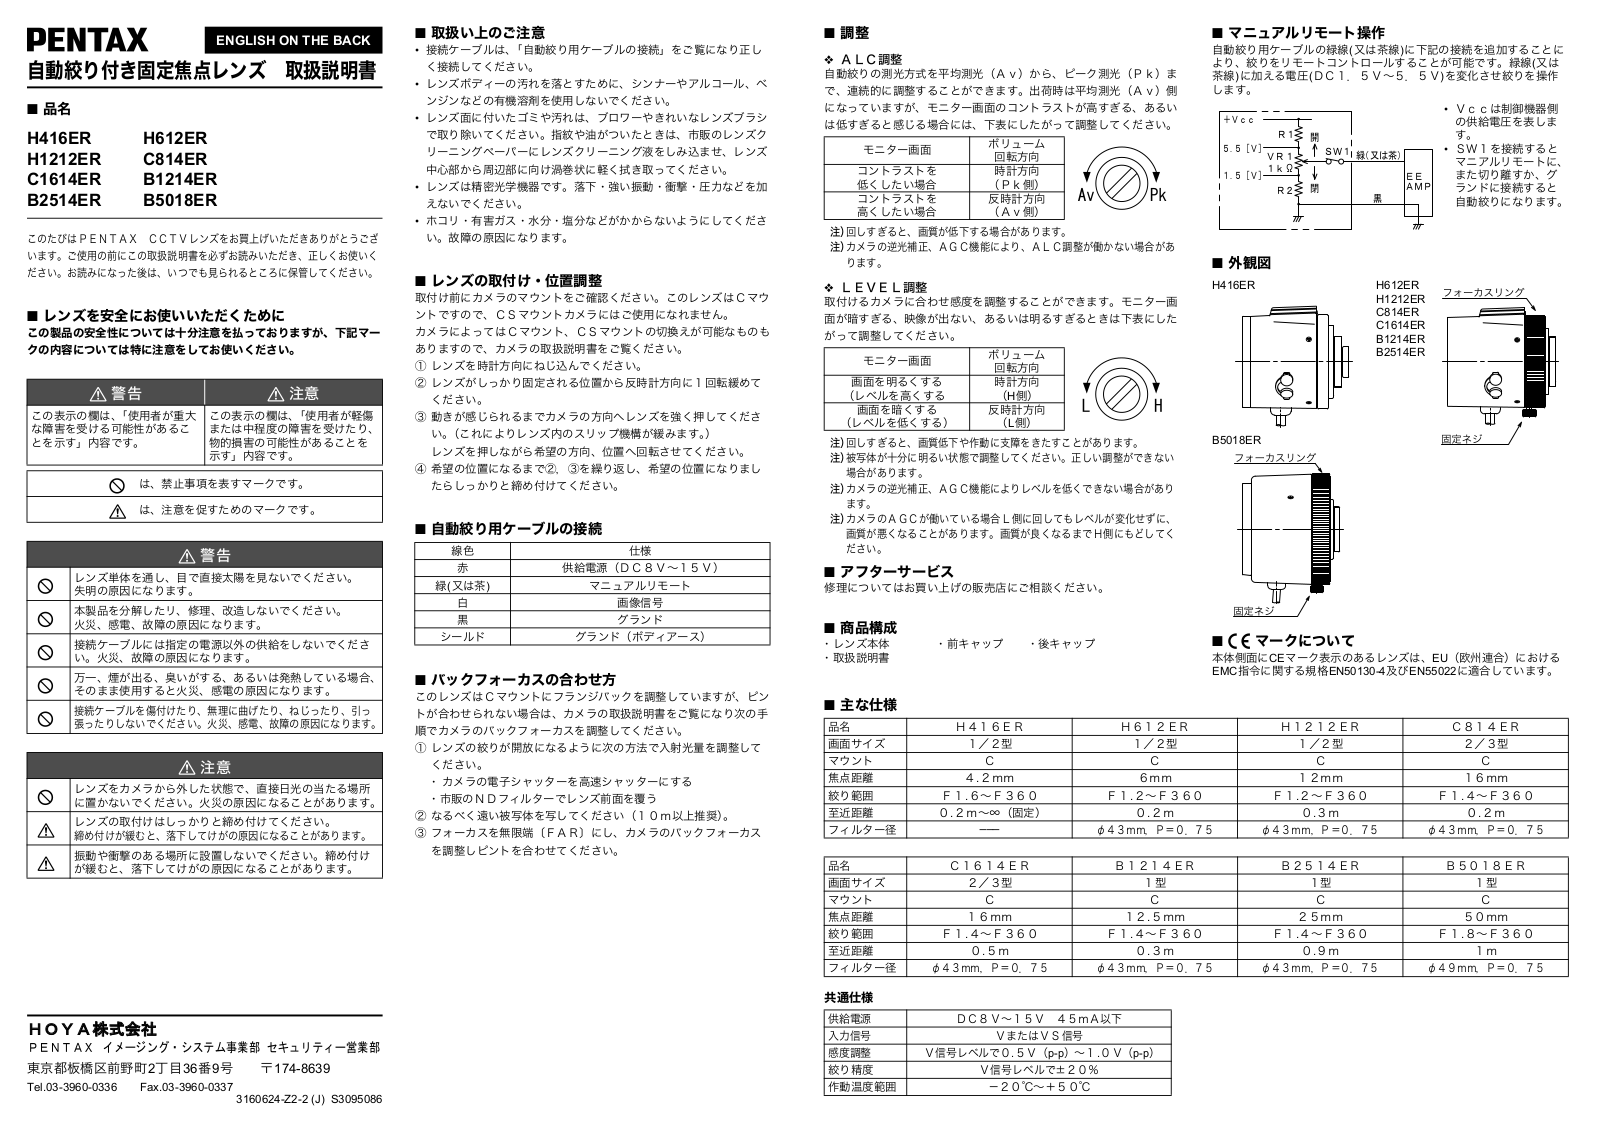 Pentax H612ER, H1212ER, B1214ER, C814ER, B2514ER User Manual